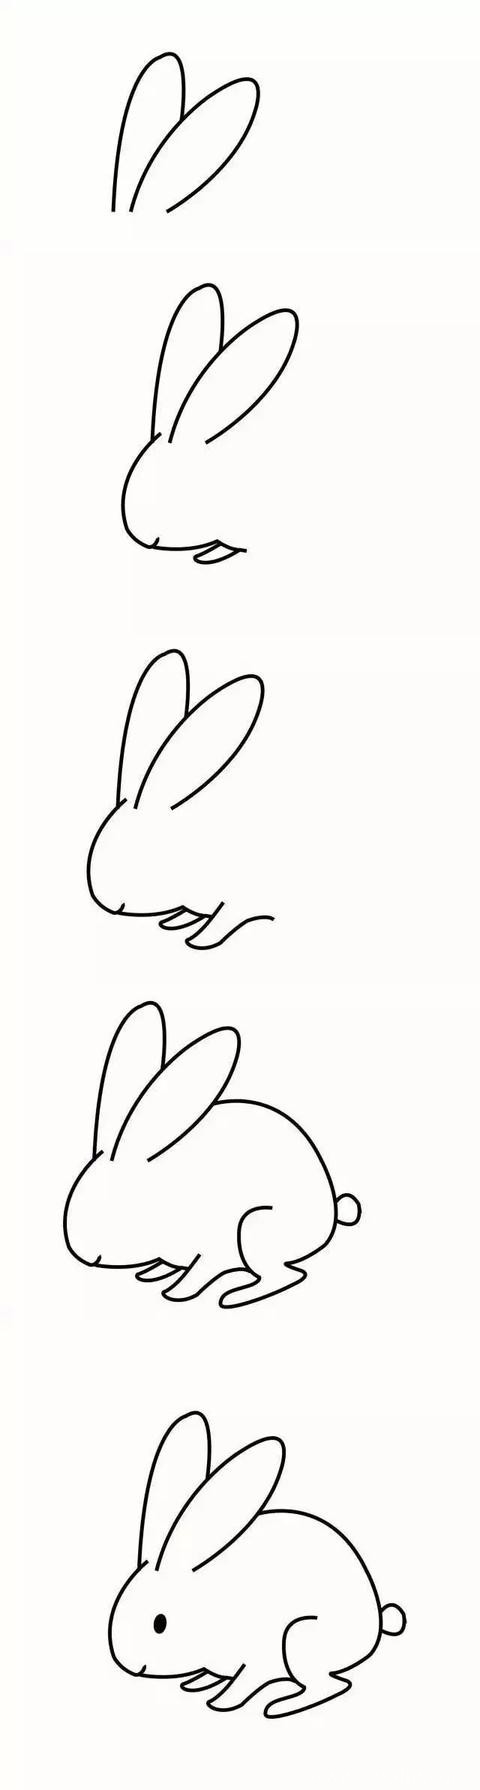 兔子如何画 简单的小兔子简笔画步骤图片素材大全